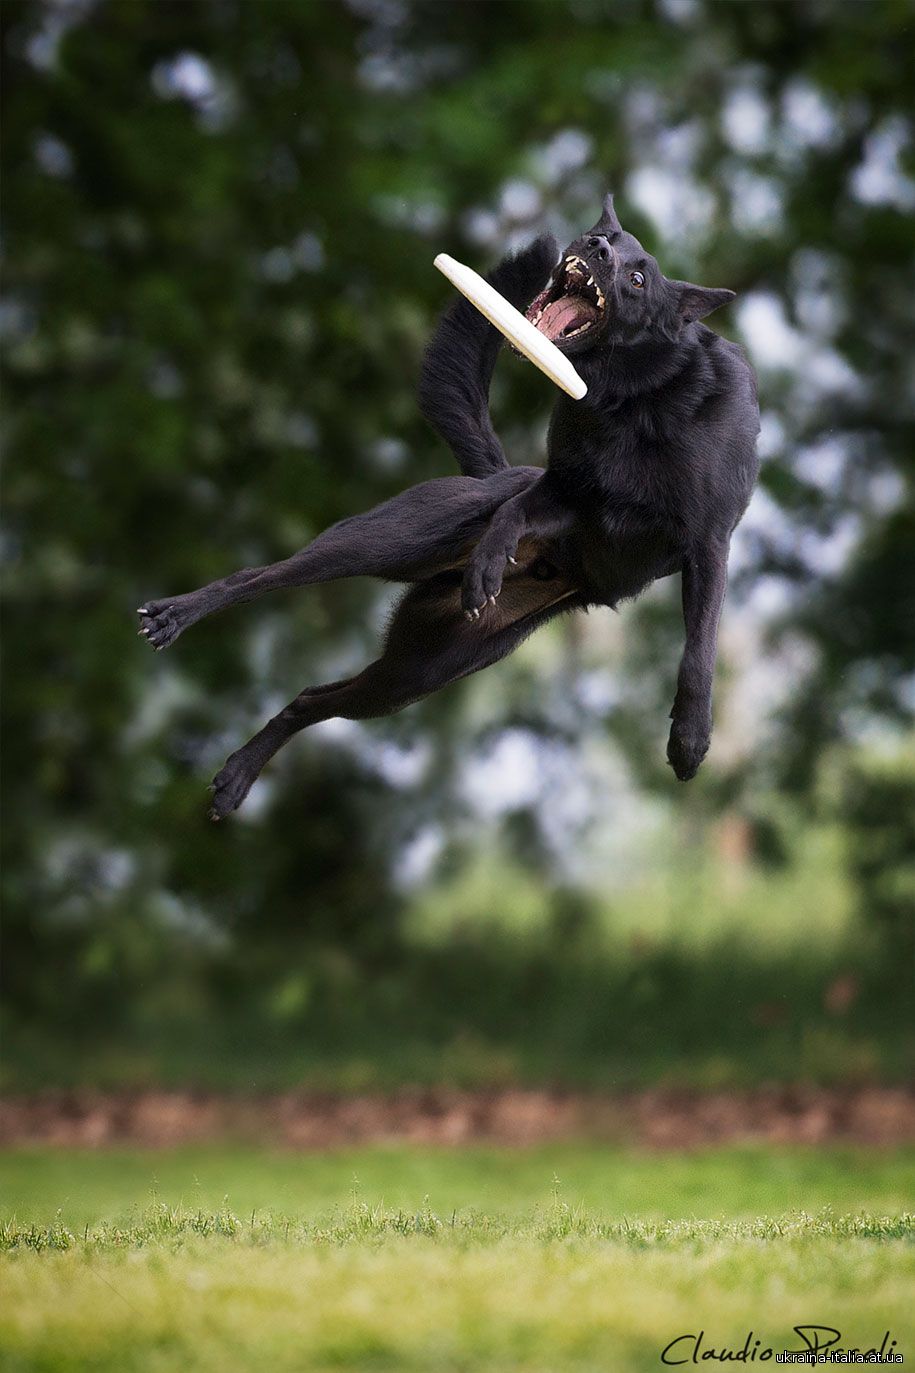 А вы знали, что собаки умеют летать? Серия фоторабот итальянского фотографа Клаудио Пикколи